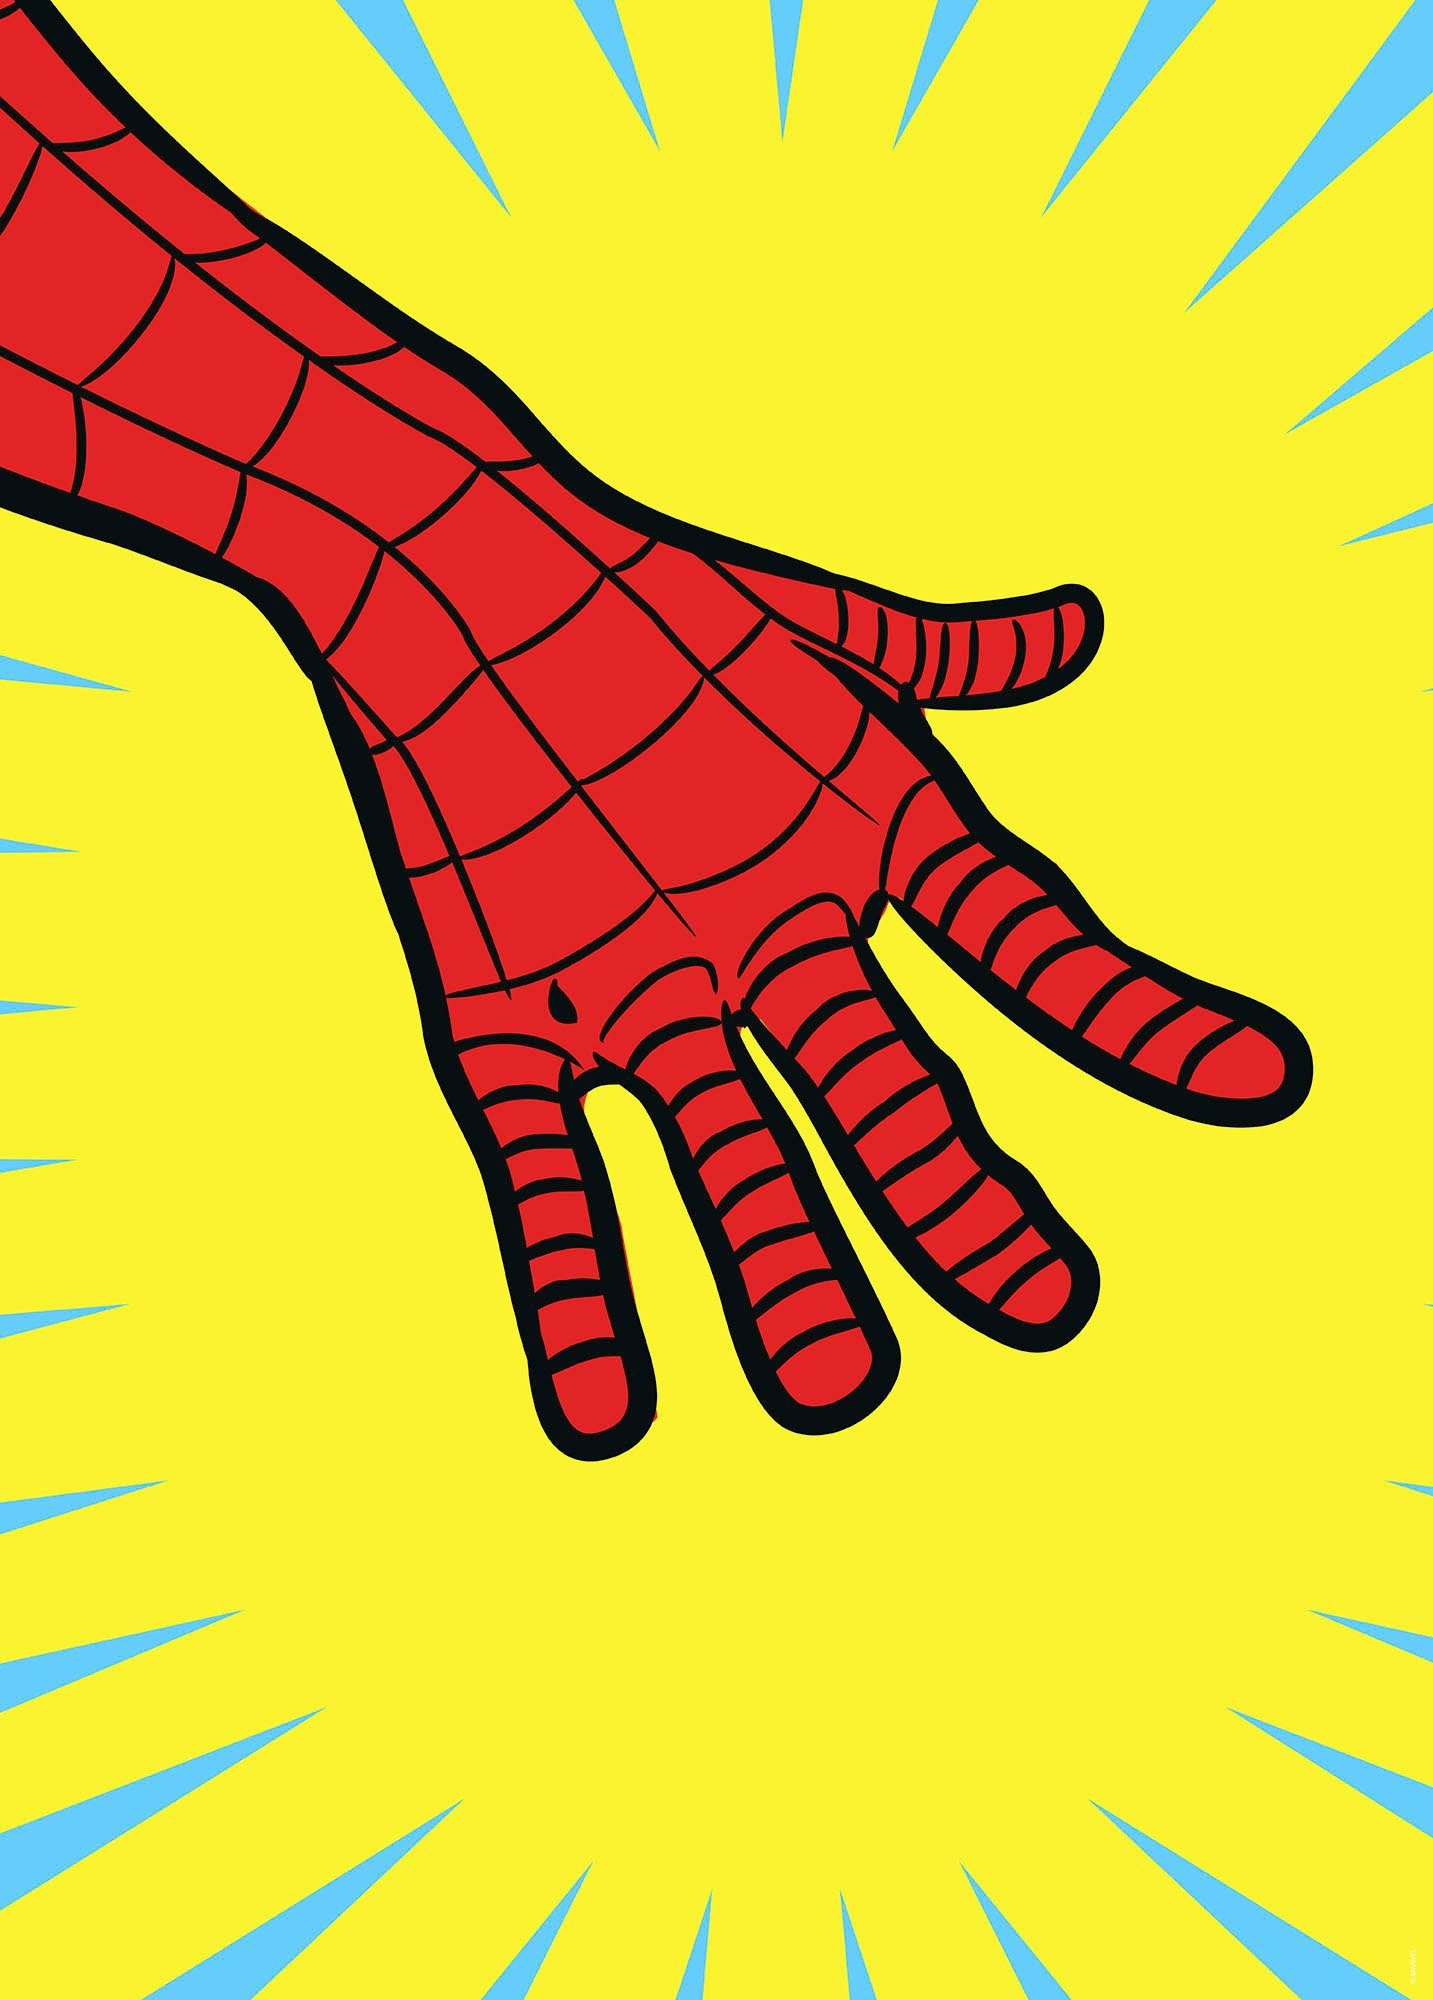 Komar Artprint Marvel PowerUp Spider-Man Hand